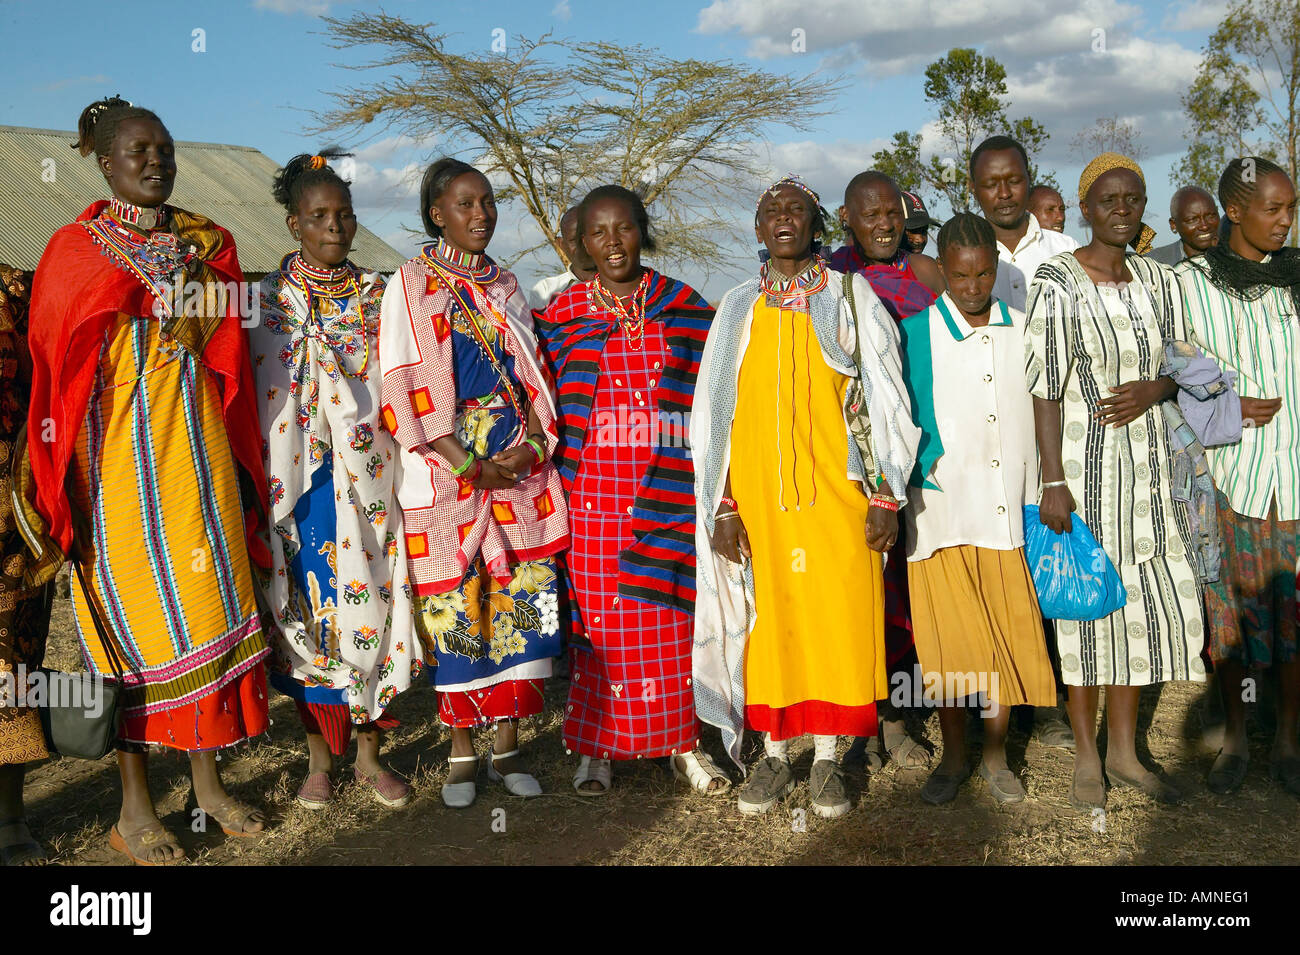 Village people singing at sunset in village of Nairobi National Park Nairobi Kenya Africa Stock Photo